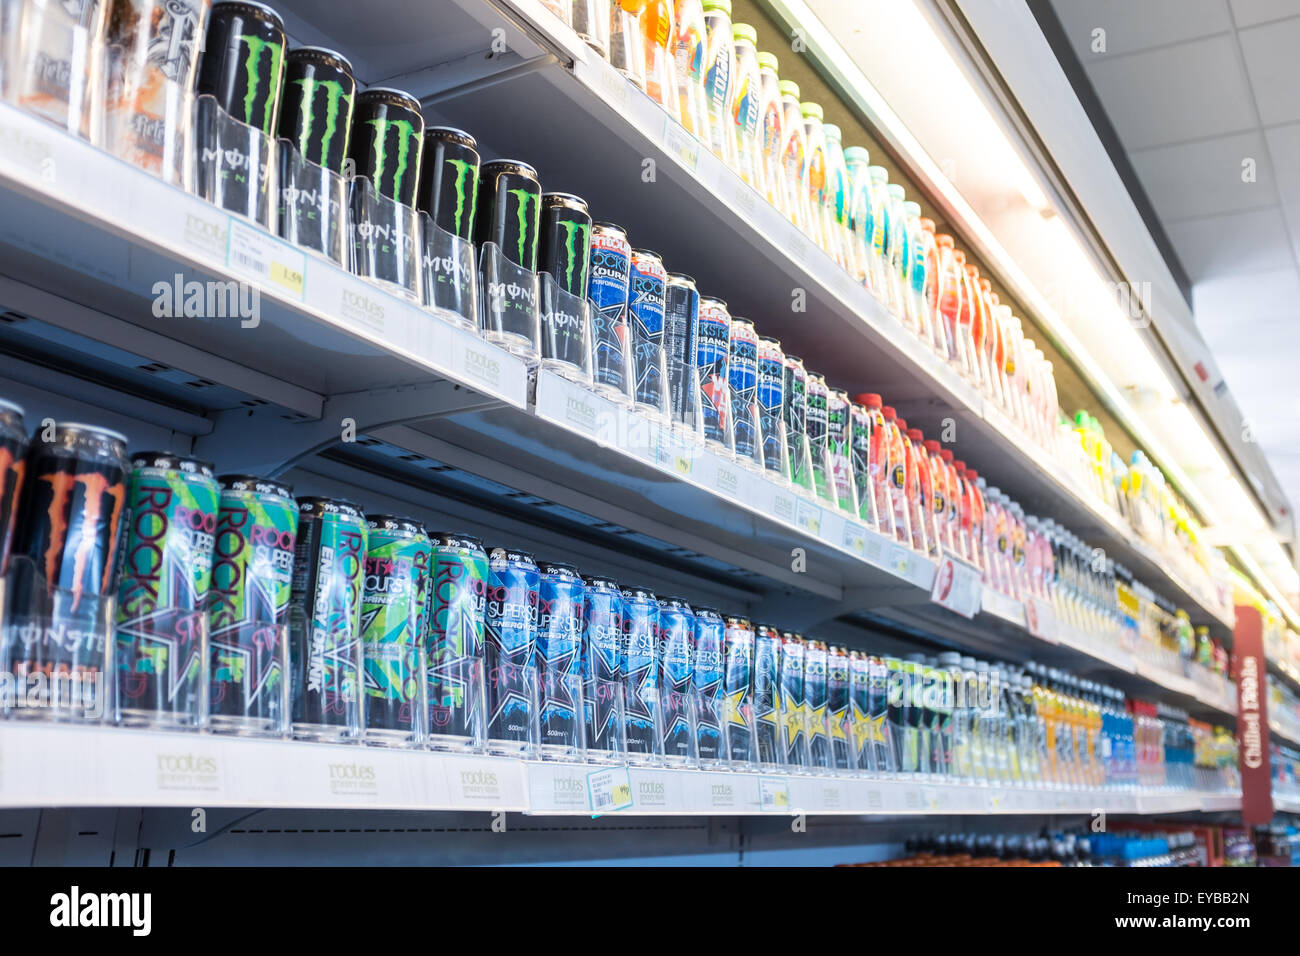 Réfrigérateurs supermarché affichant une gamme de boissons gazeuses sucrées Banque D'Images